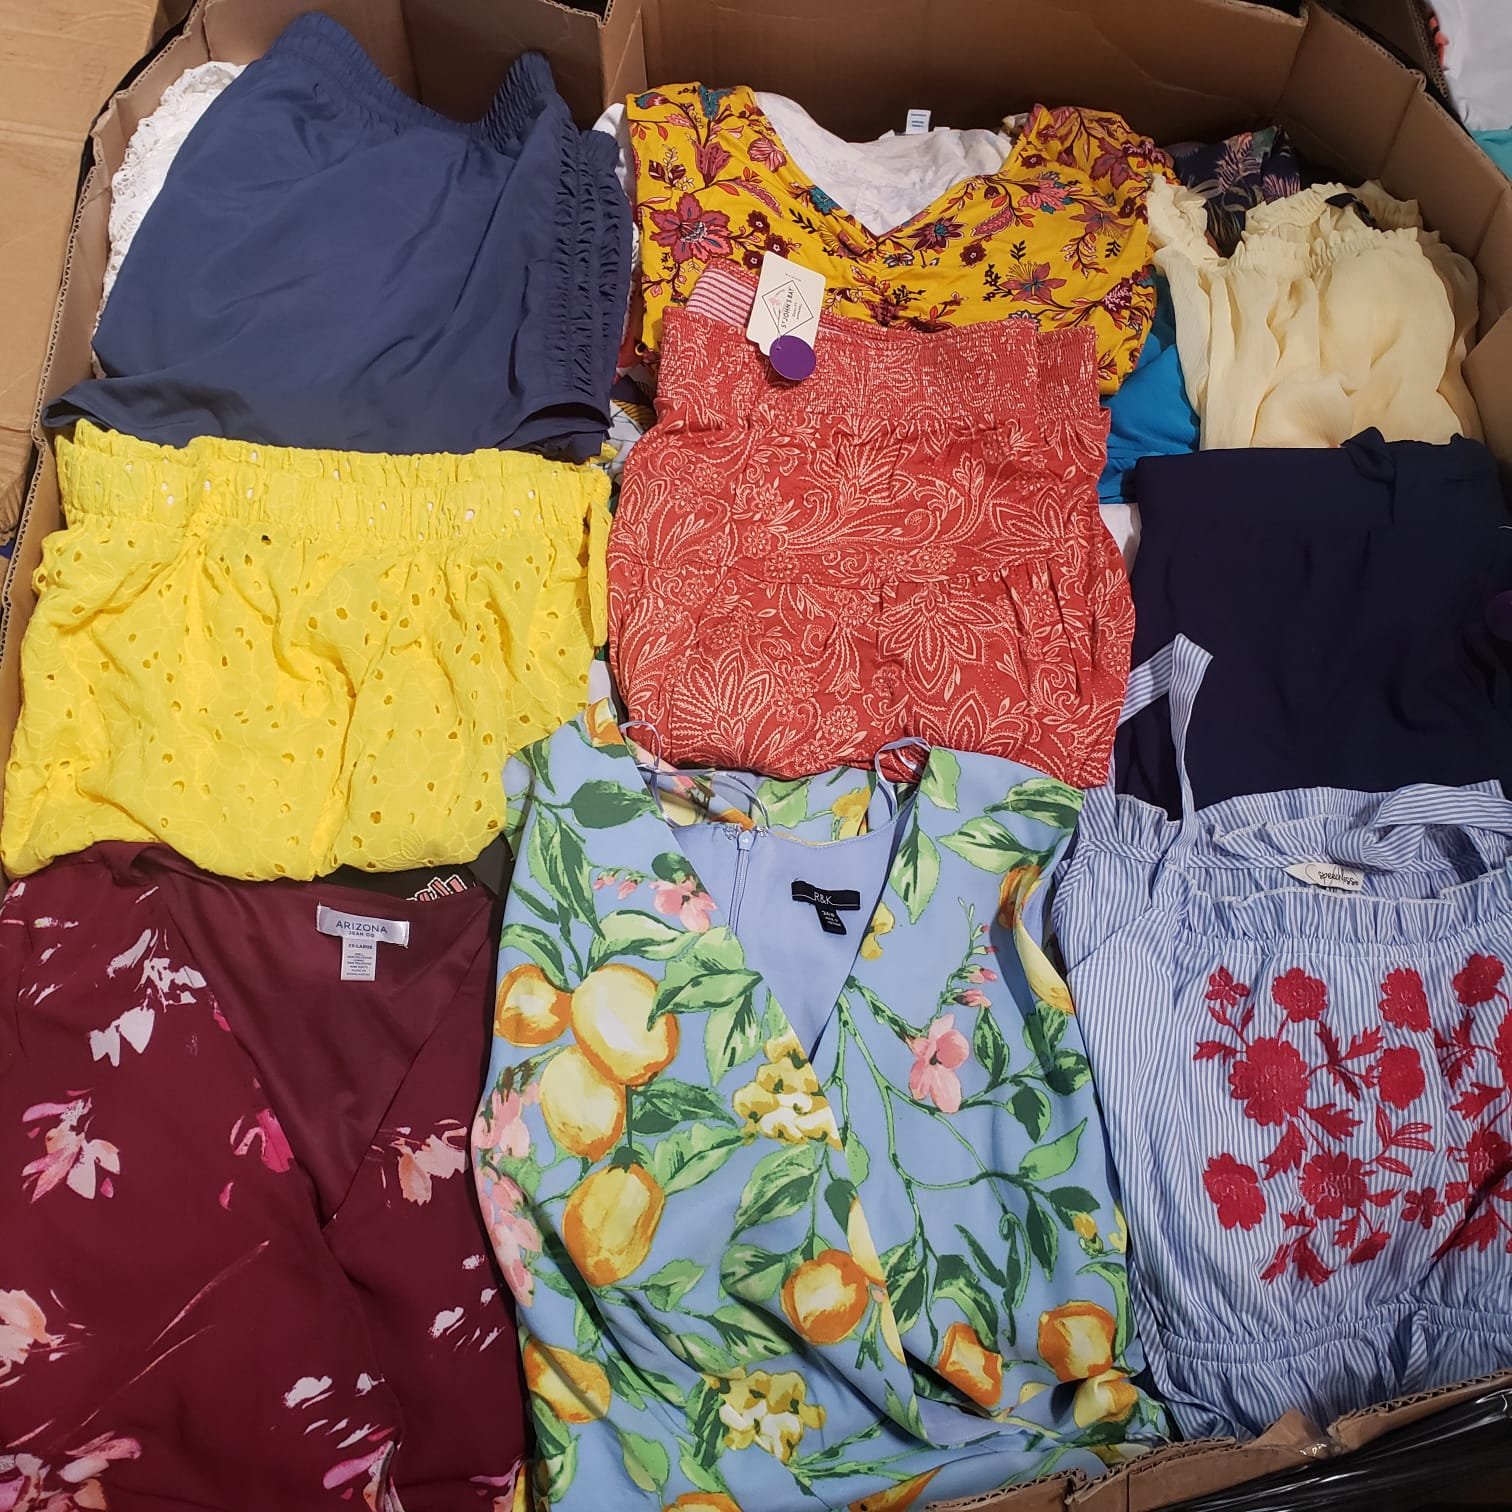 Gently Used 30 Pcs Bulk Women Plus Size Clothing Bundle Wholesale Mixed Lot